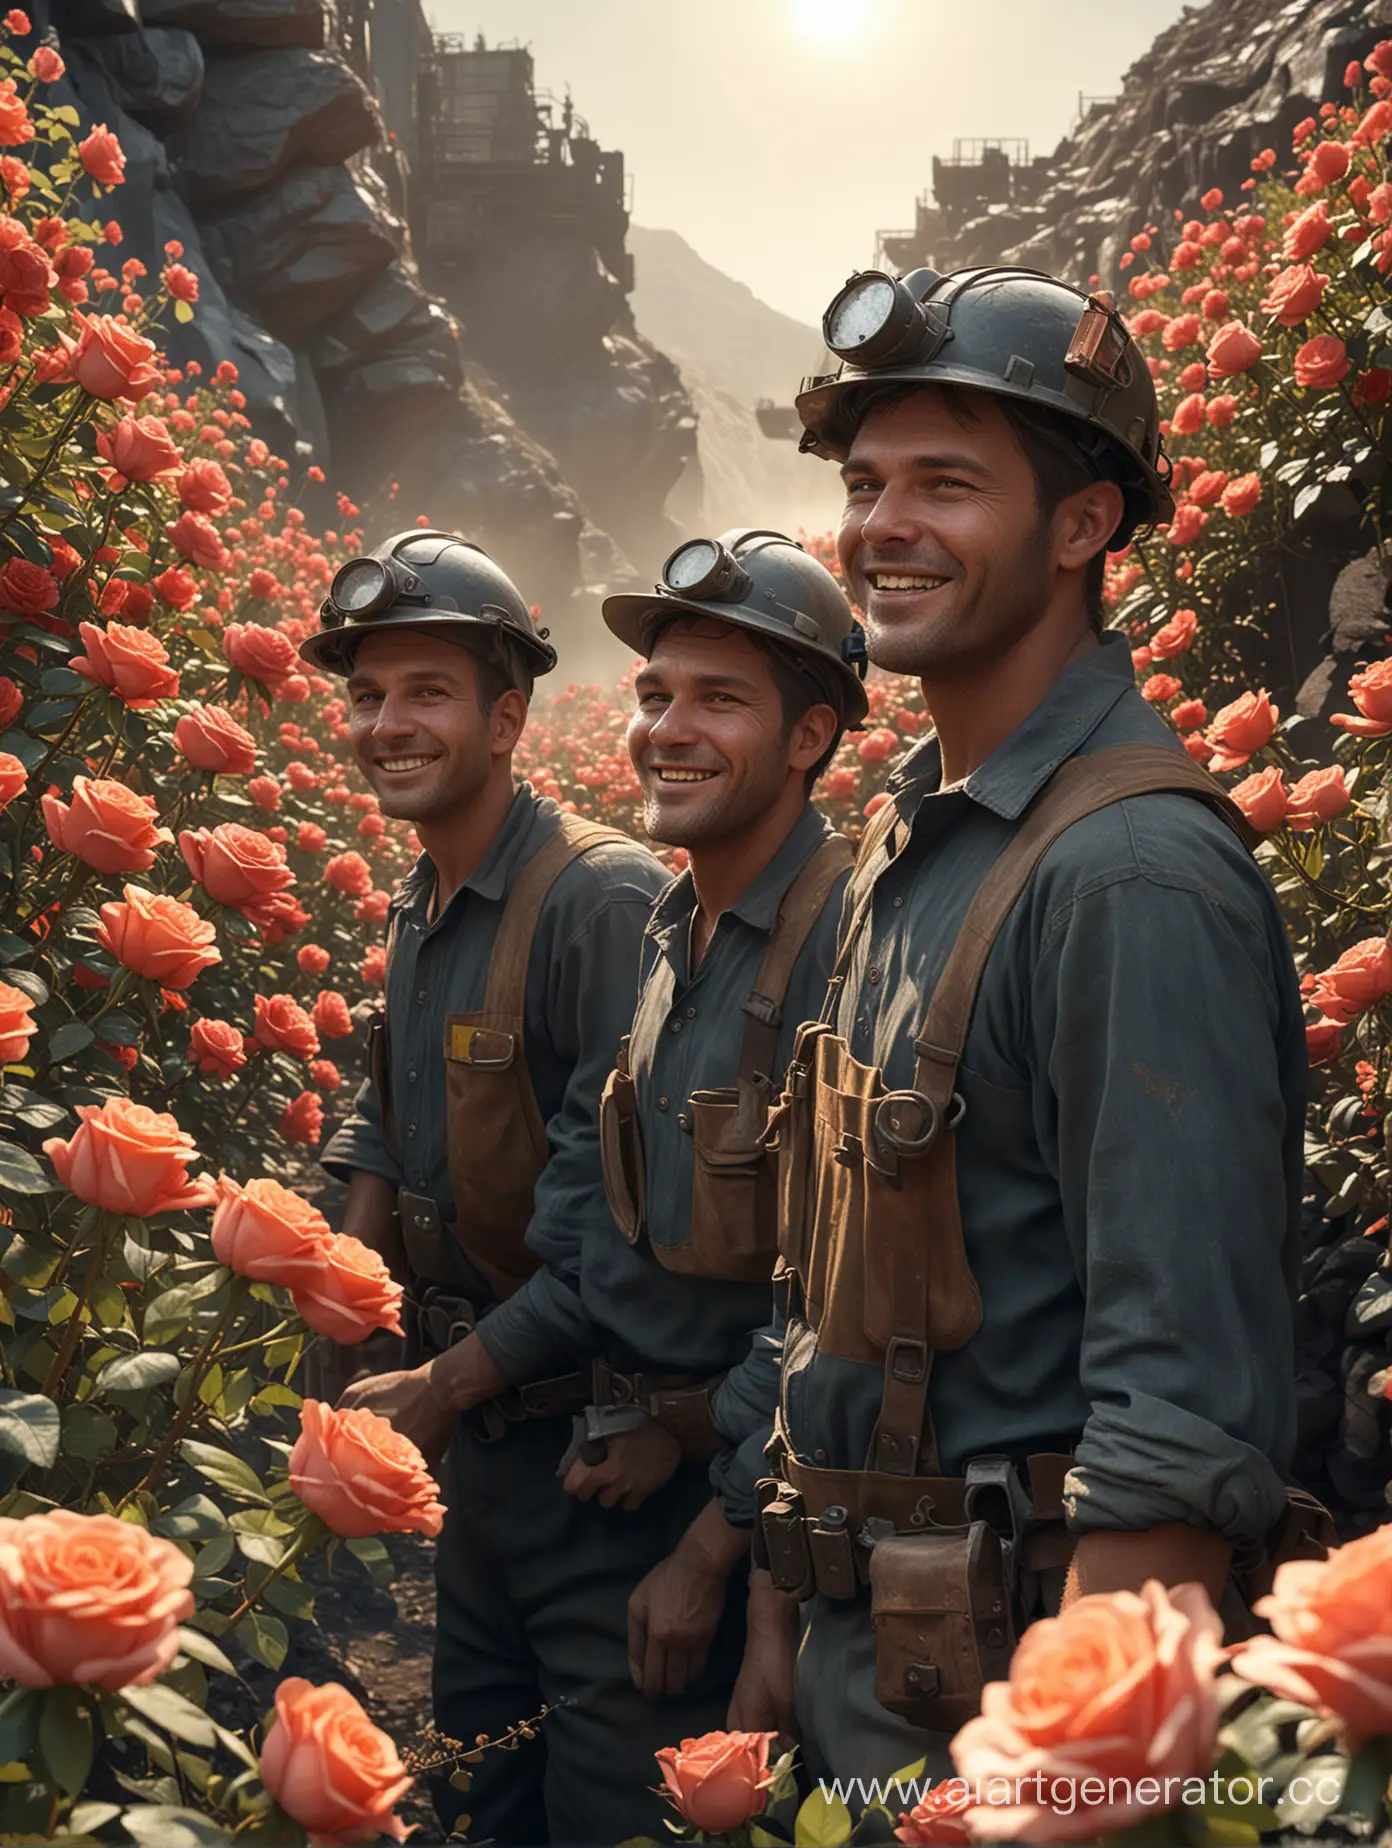 Сгенерируй реалистичное изображение, на котором изображены шахтёры на угольном разрезе. Весь разрез зарос розами, светит солнце. Шахтеры улыбаются. Изображение должно быть в высоком разрешении.